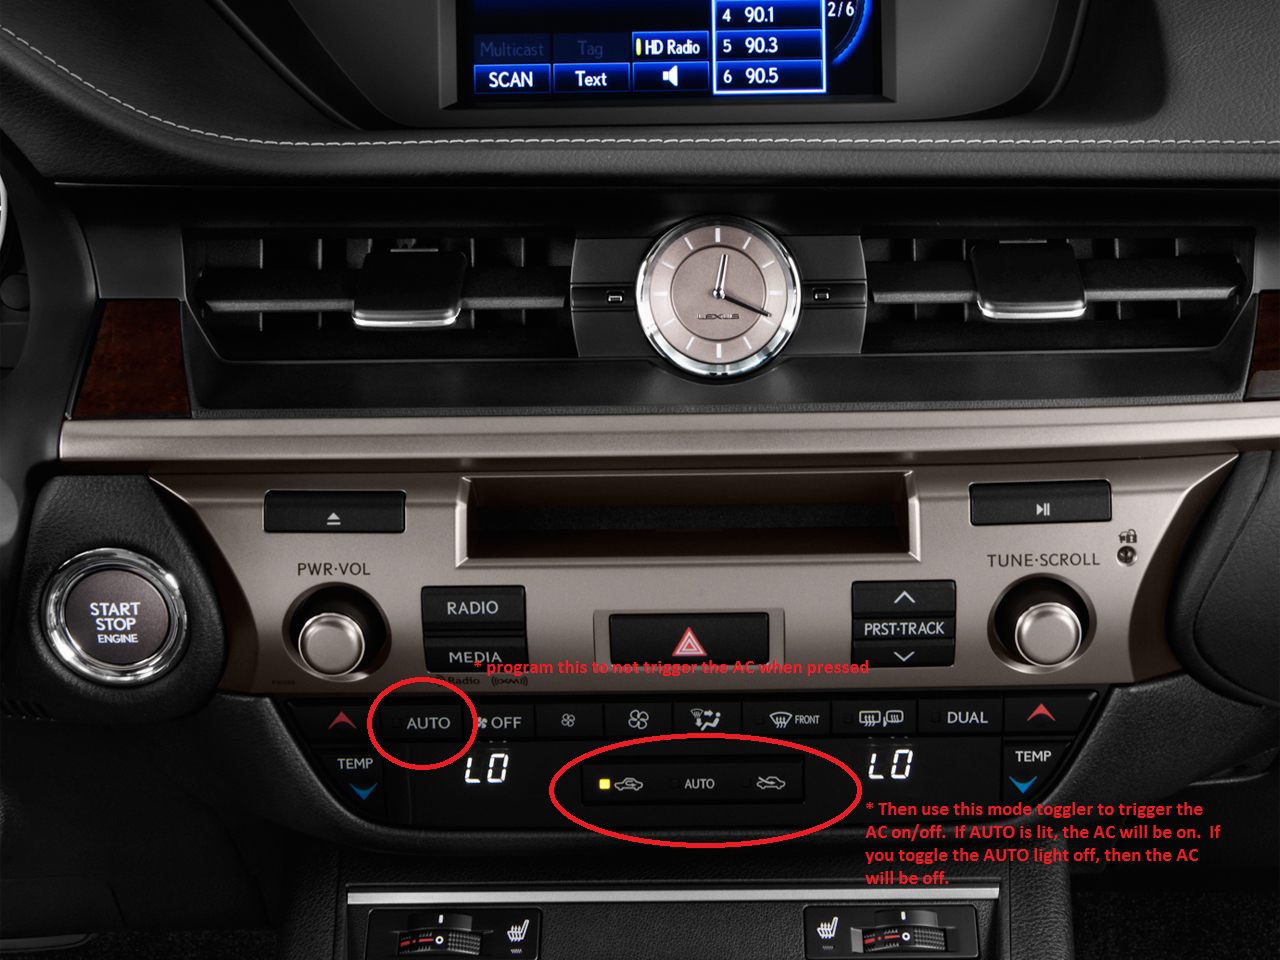 A/C Button? - Page 2 - ClubLexus - Lexus Forum Discussion